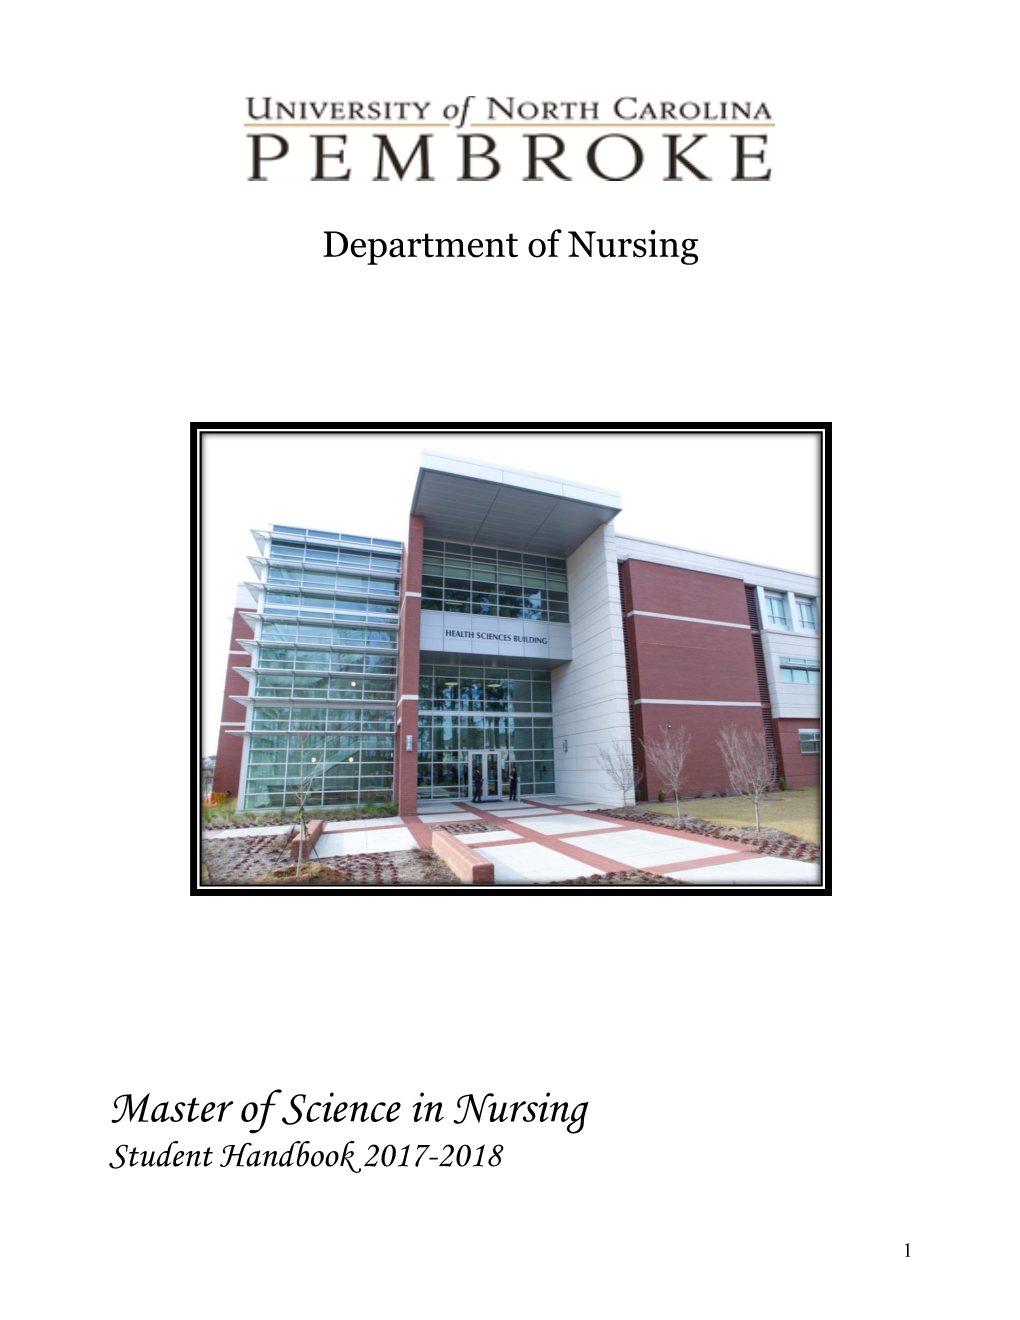 Master of Science in Nursing Student Handbook 2017-2018